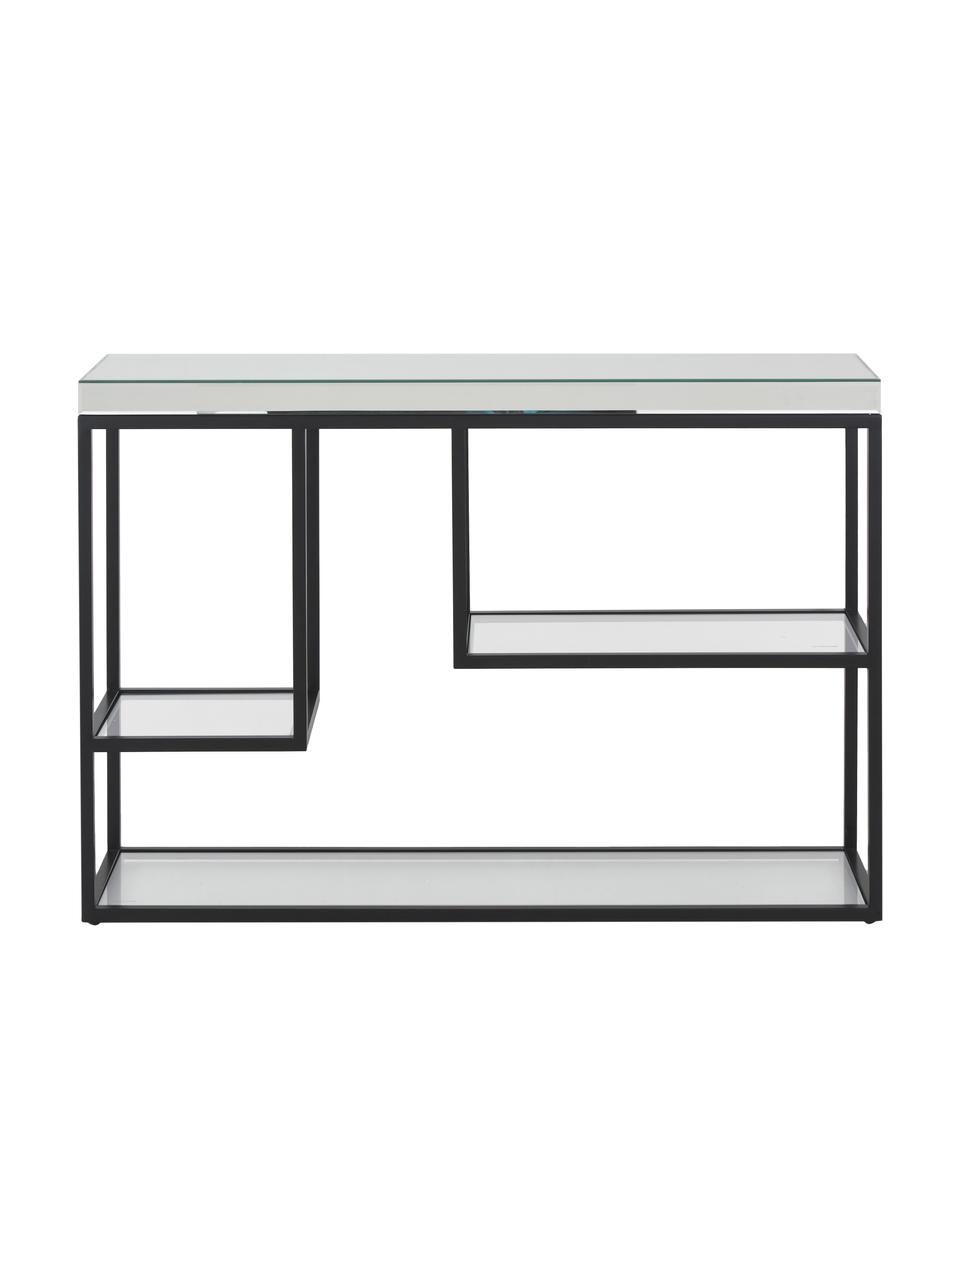 Consola Pippard, con tablero de vidrio, Estructura: metal pintado, Estante: espejo de cristal, Negro, transparente, An 120 x Al 82 cm